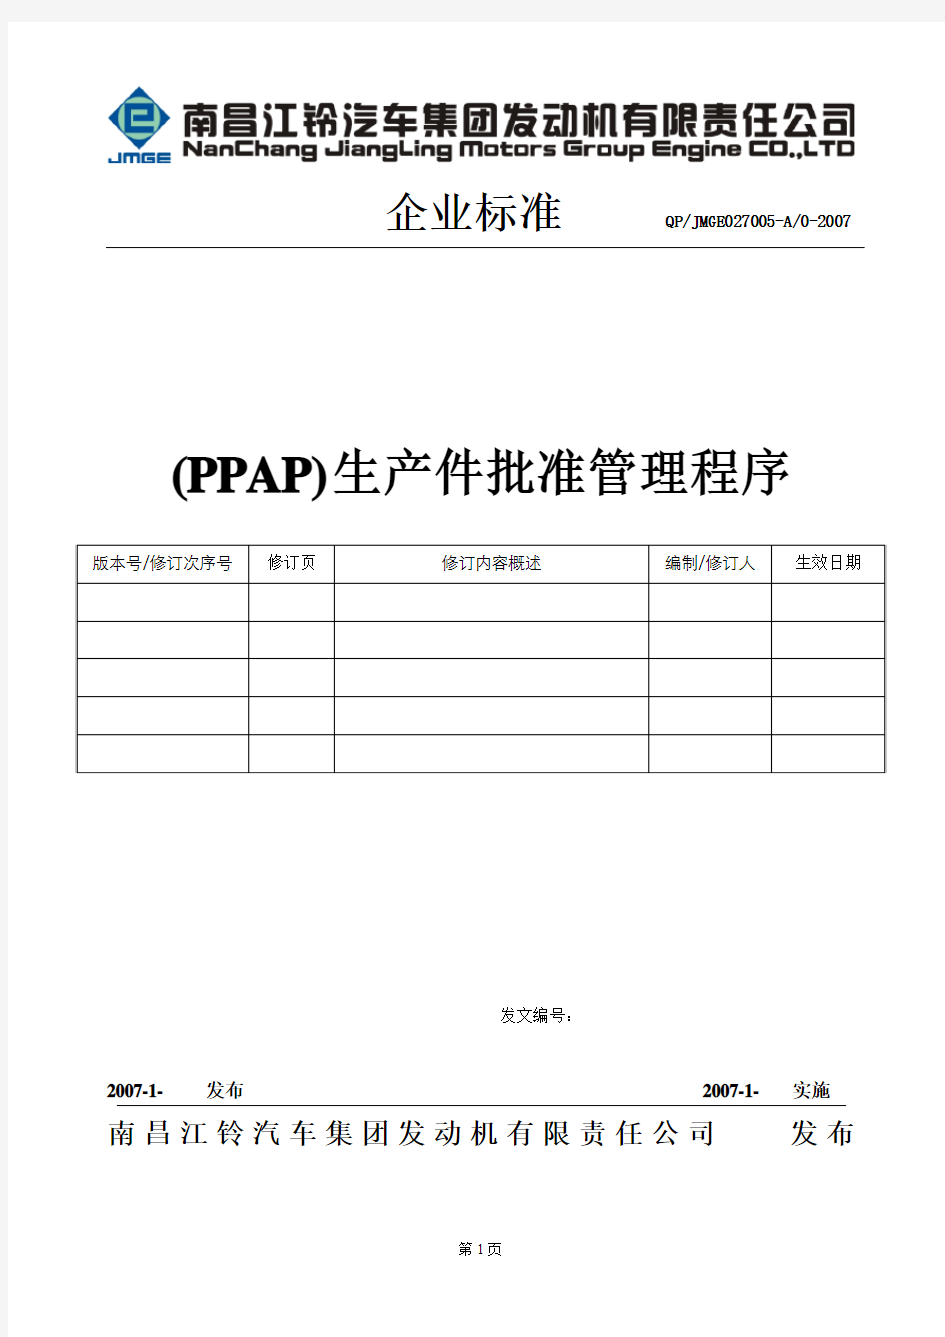 PPAP生产件批准管理程序